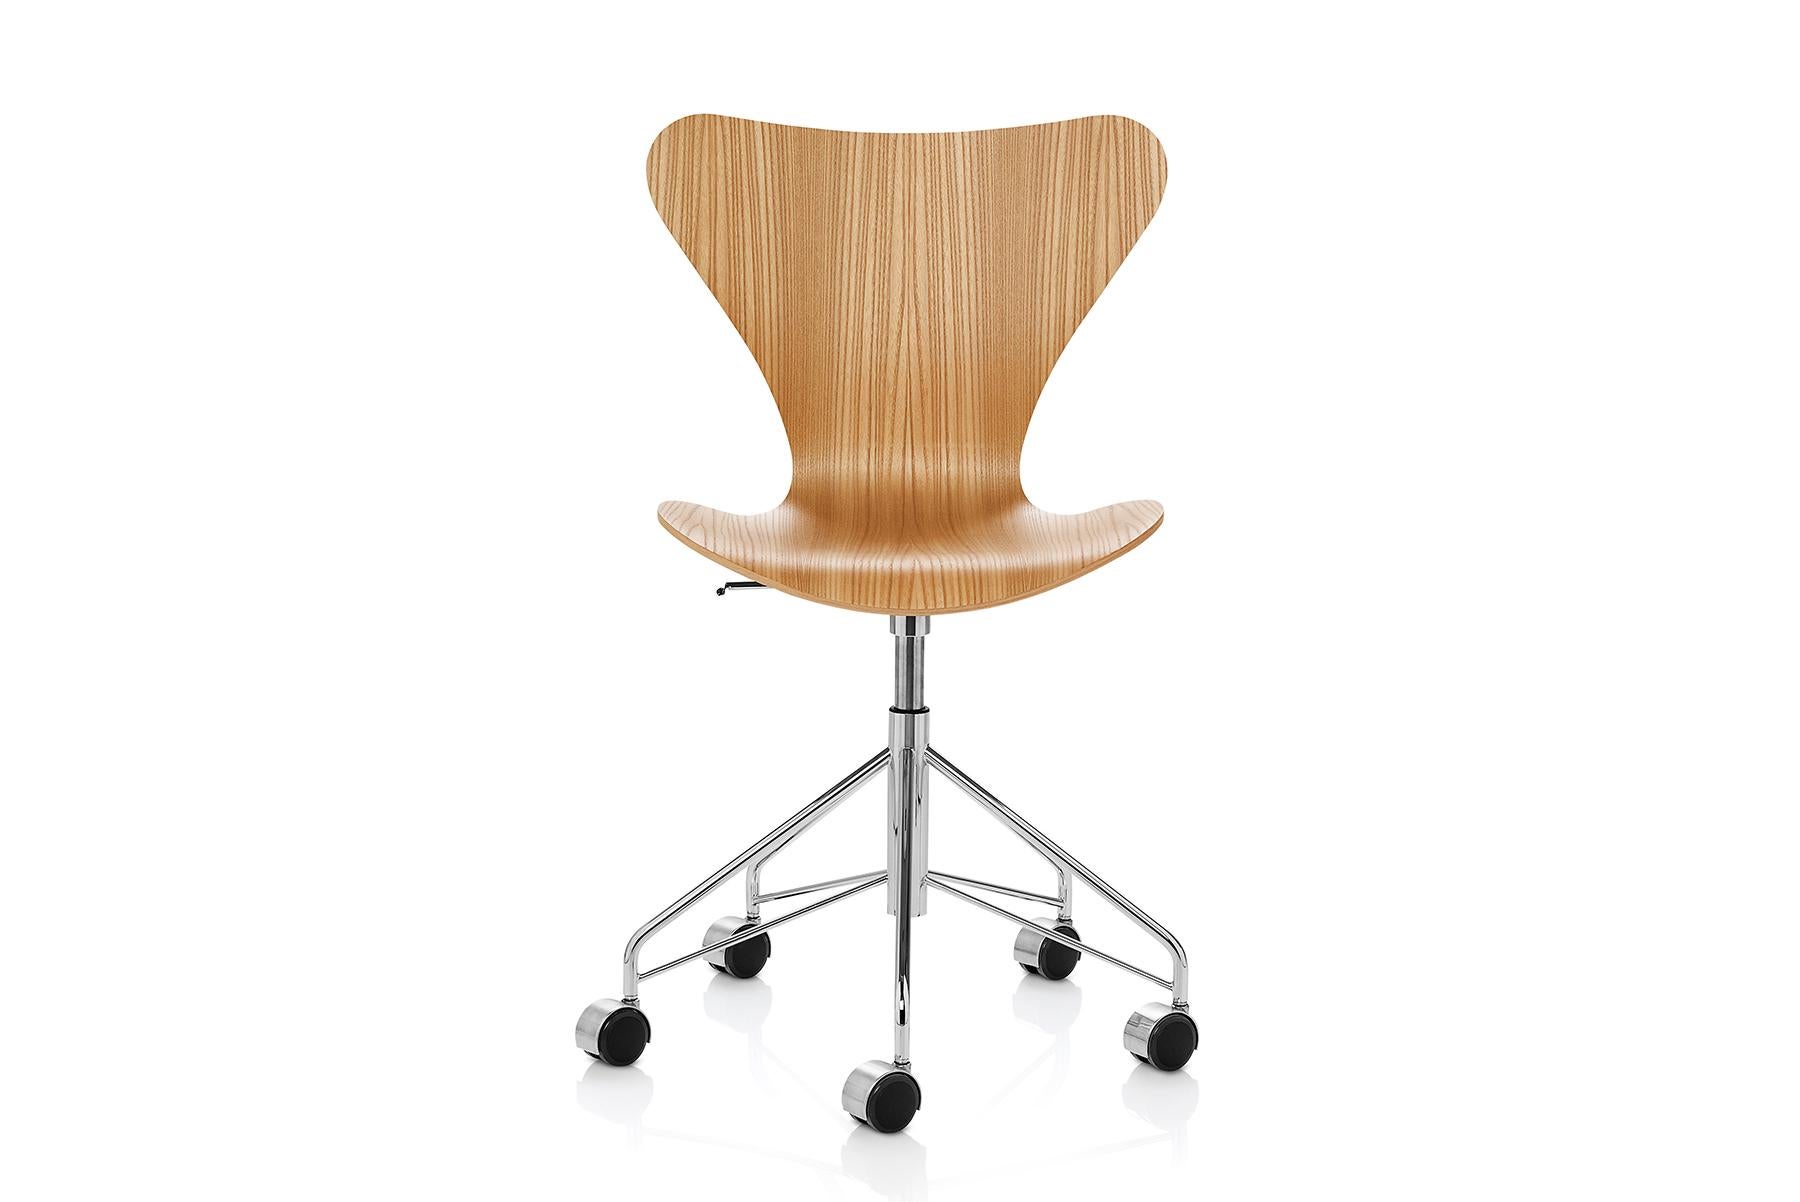 Erleben Sie Arne Jacobsens klassischen Stuhl der Serie 7 mit Drehfuß und einer Schale aus Klarlack. Der vierbeinige, stapelbare Stuhl stellt die Krönung der Laminiertechnik dar. Der Visionär Arne Jacobsen nutzte die Möglichkeiten des Laminierens bis